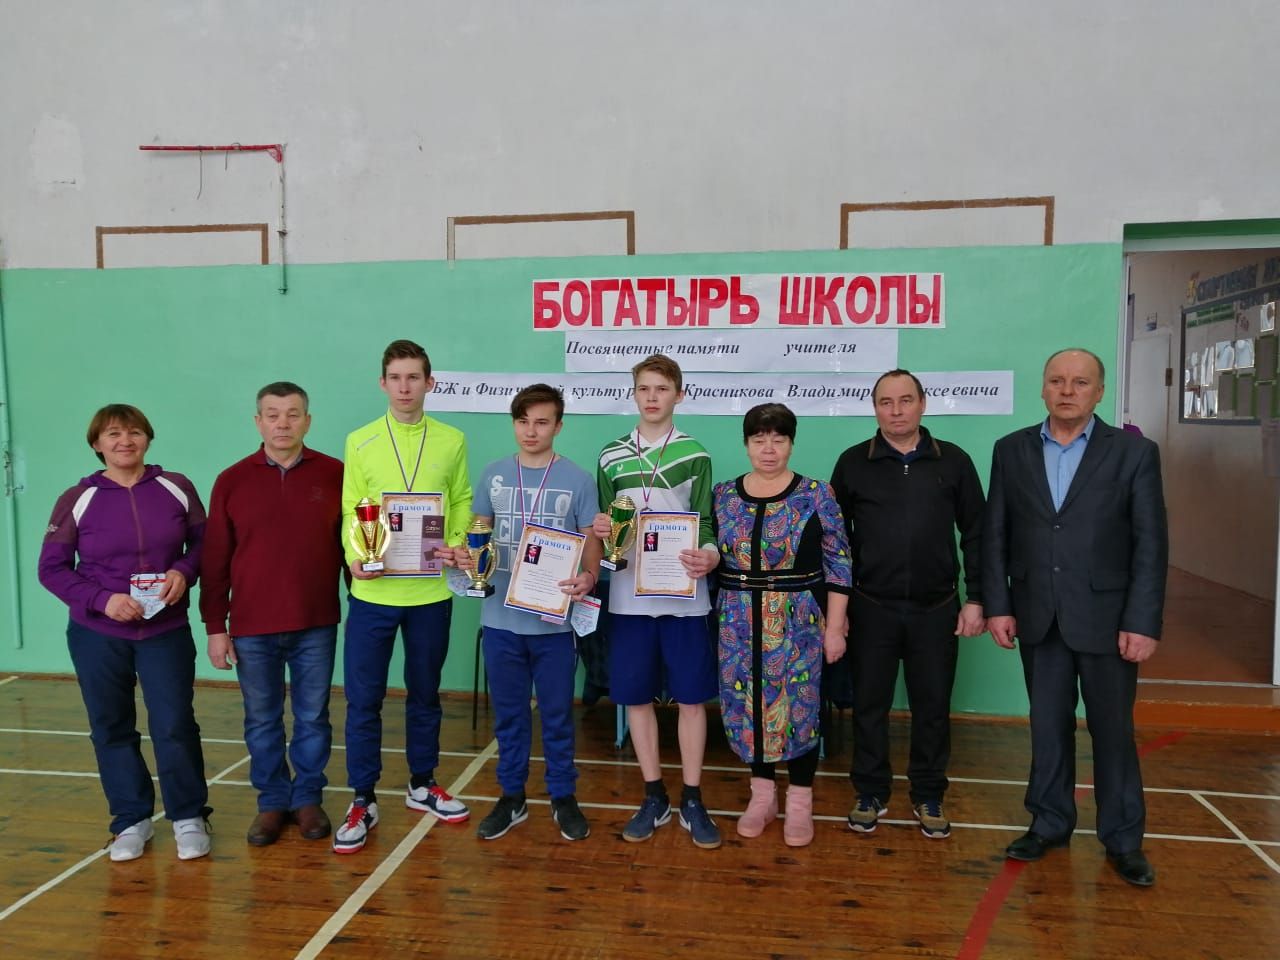 Старочелнинские школьники состязались за звание «Богатыря школы»